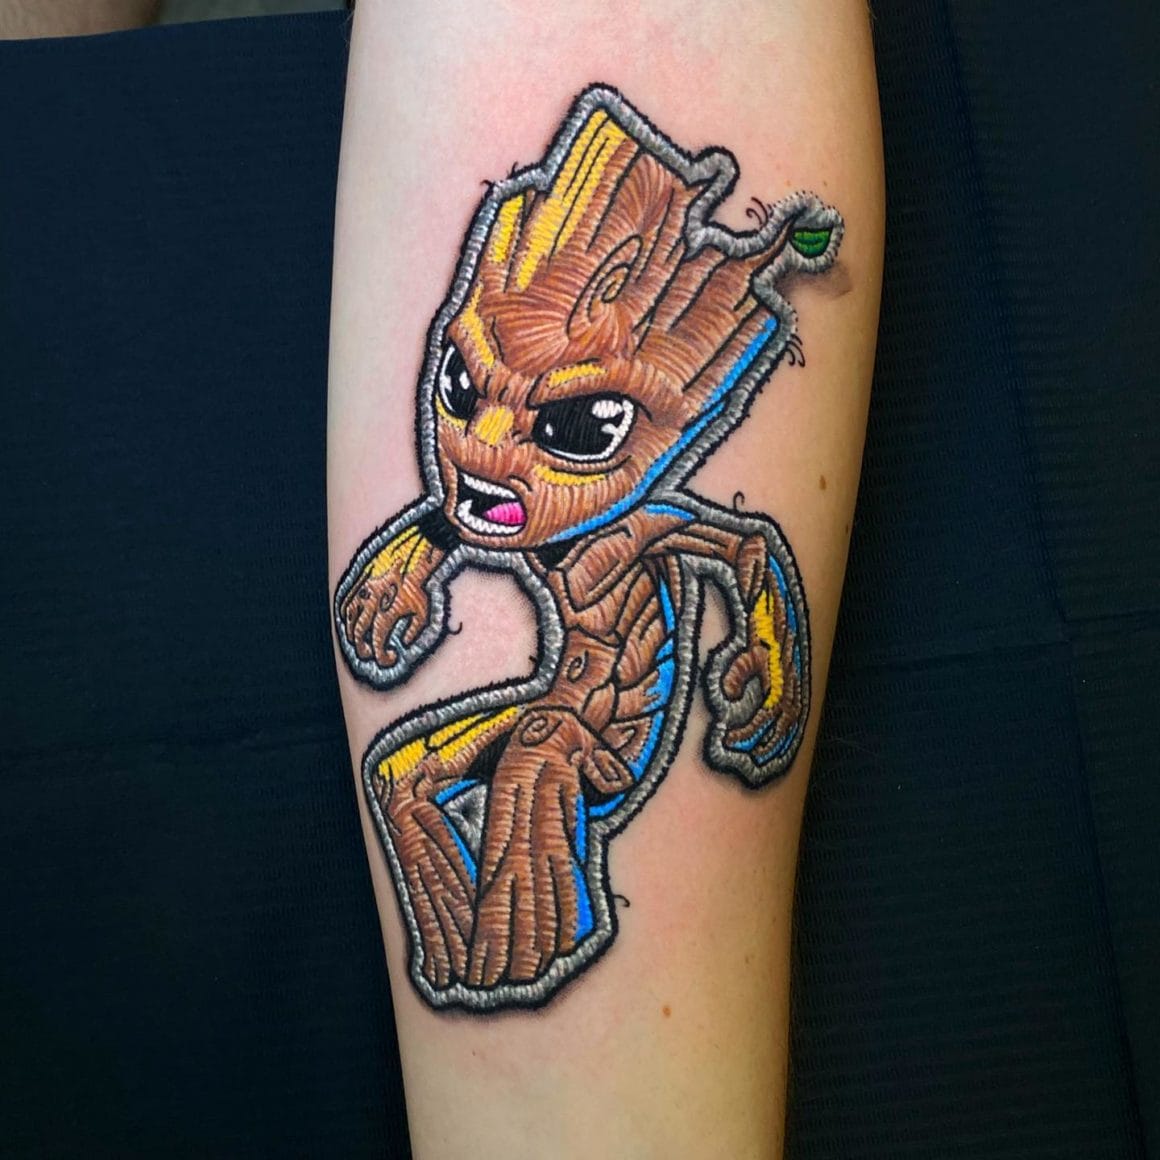 Sur ce tatouage est représenté Groot, l'un des personnages de Marvel.